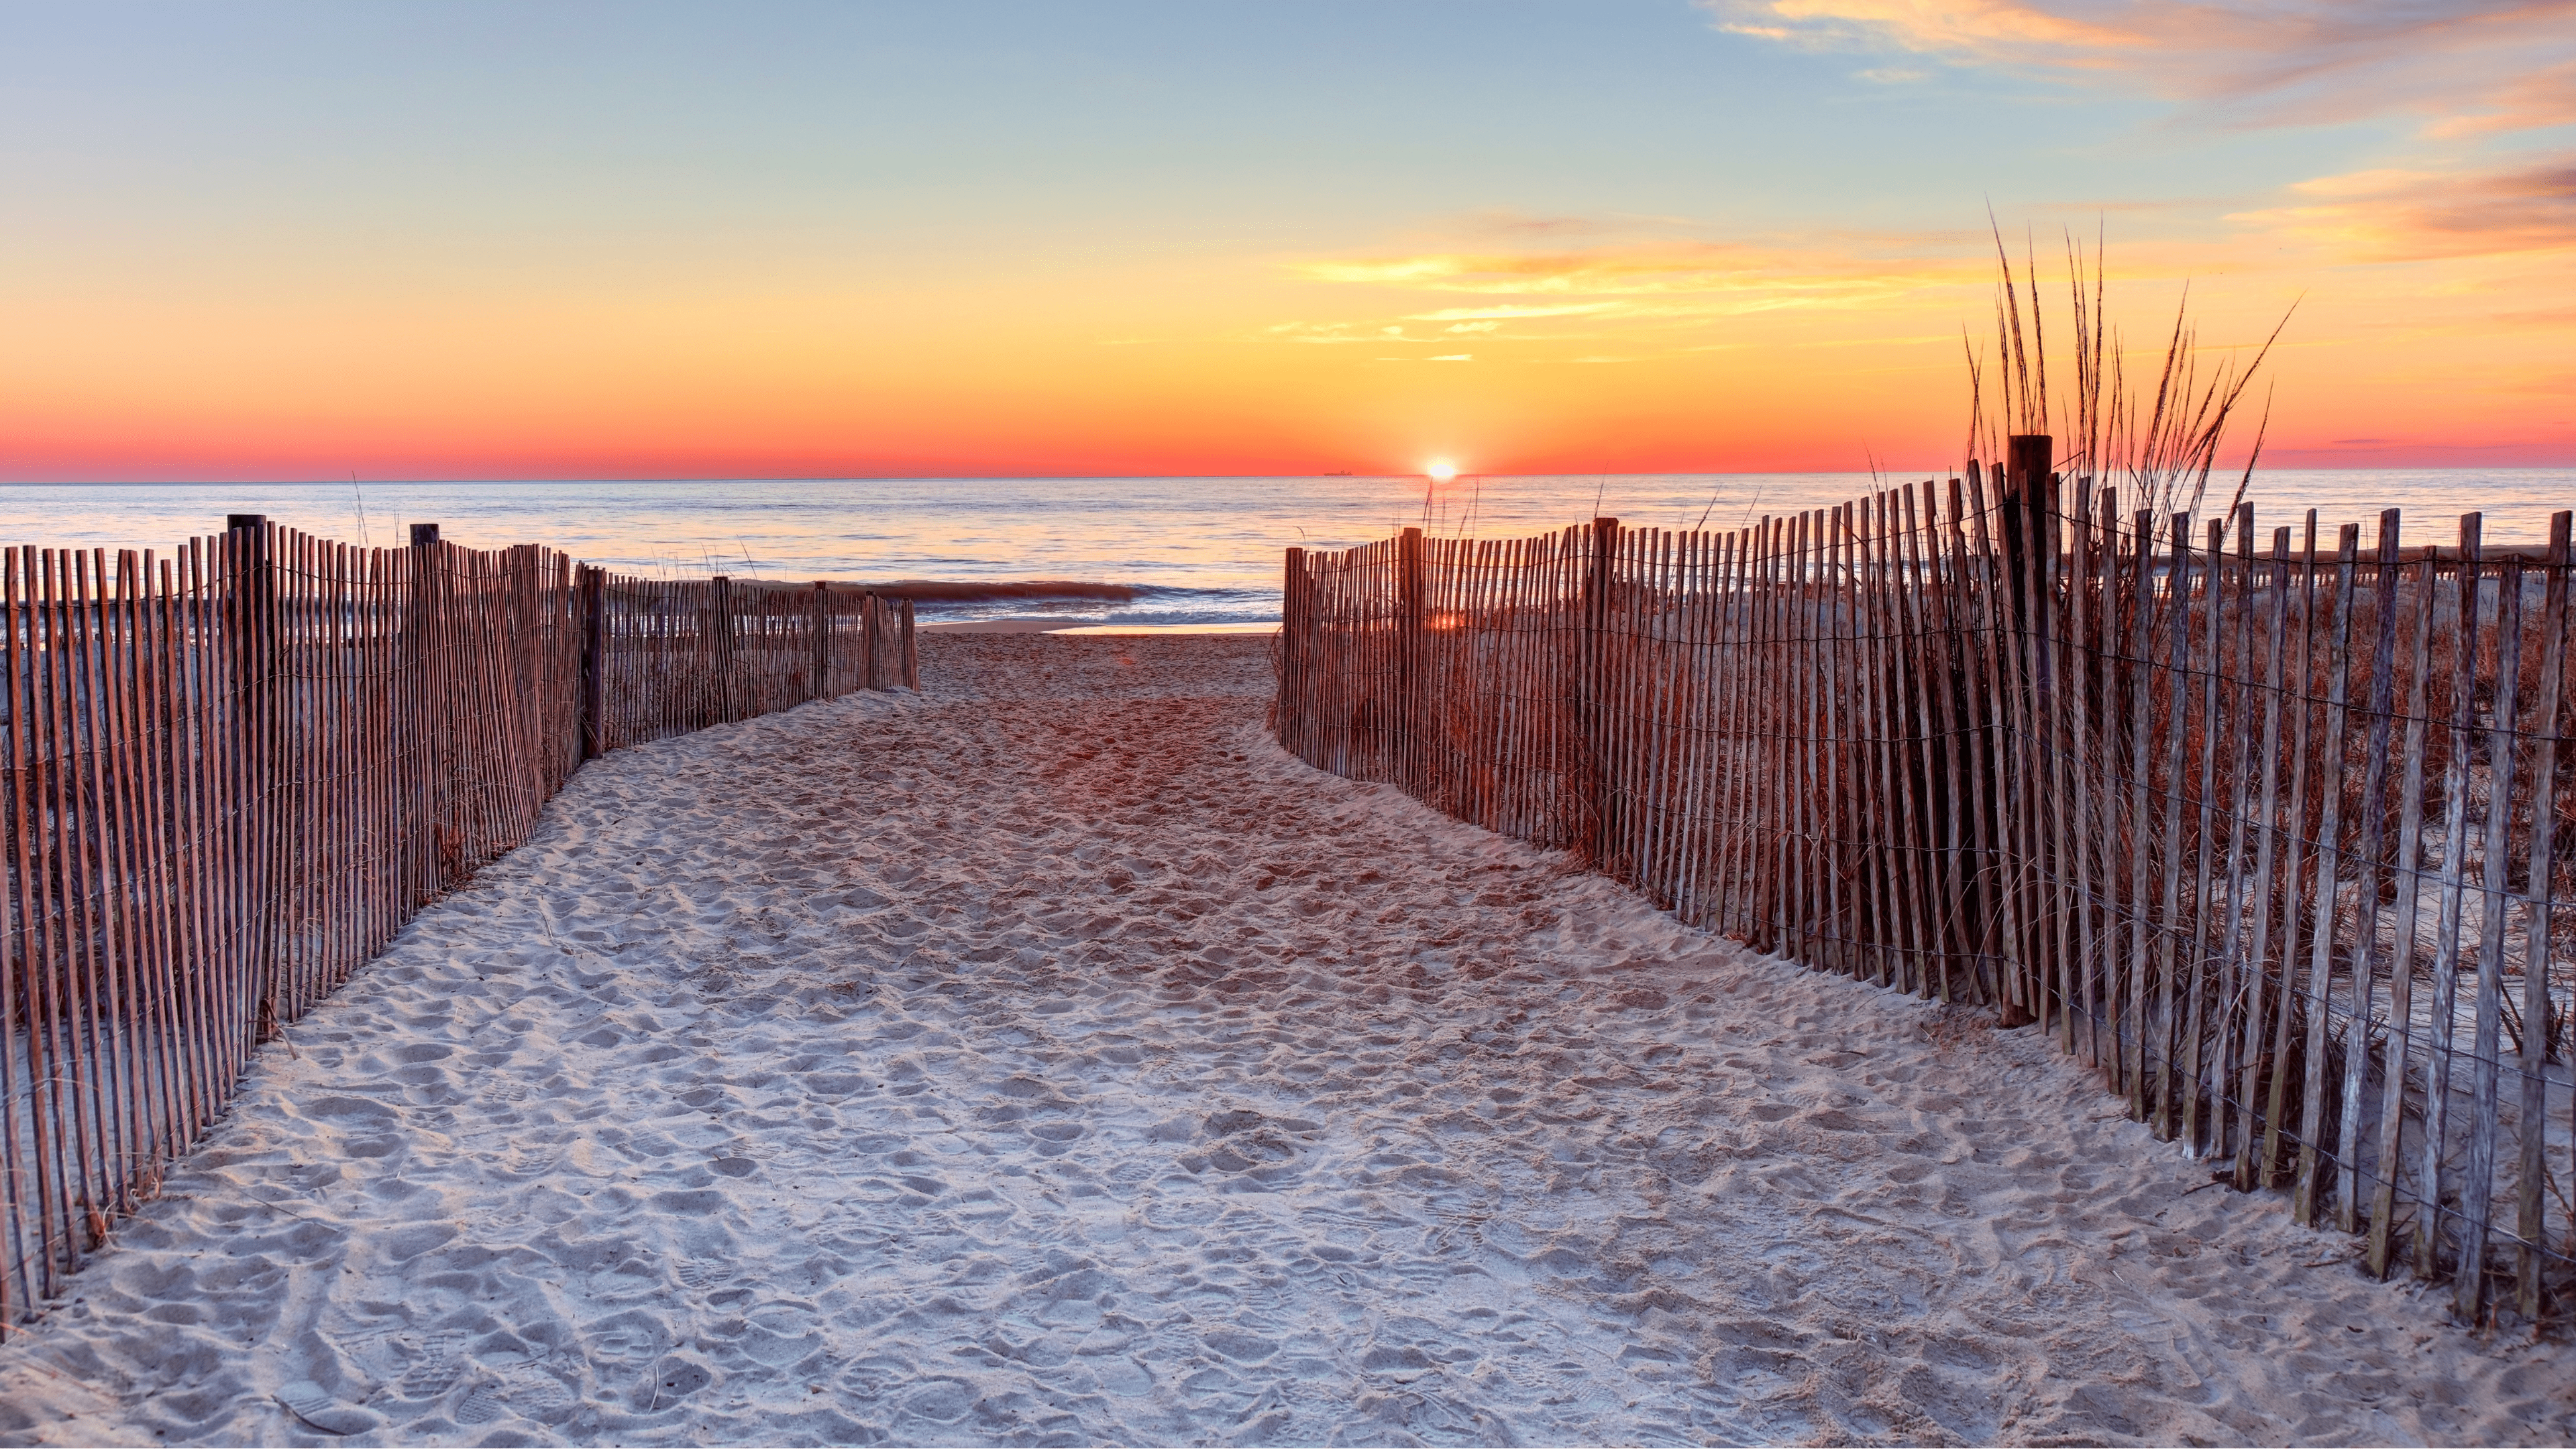 White sands of delaware beach